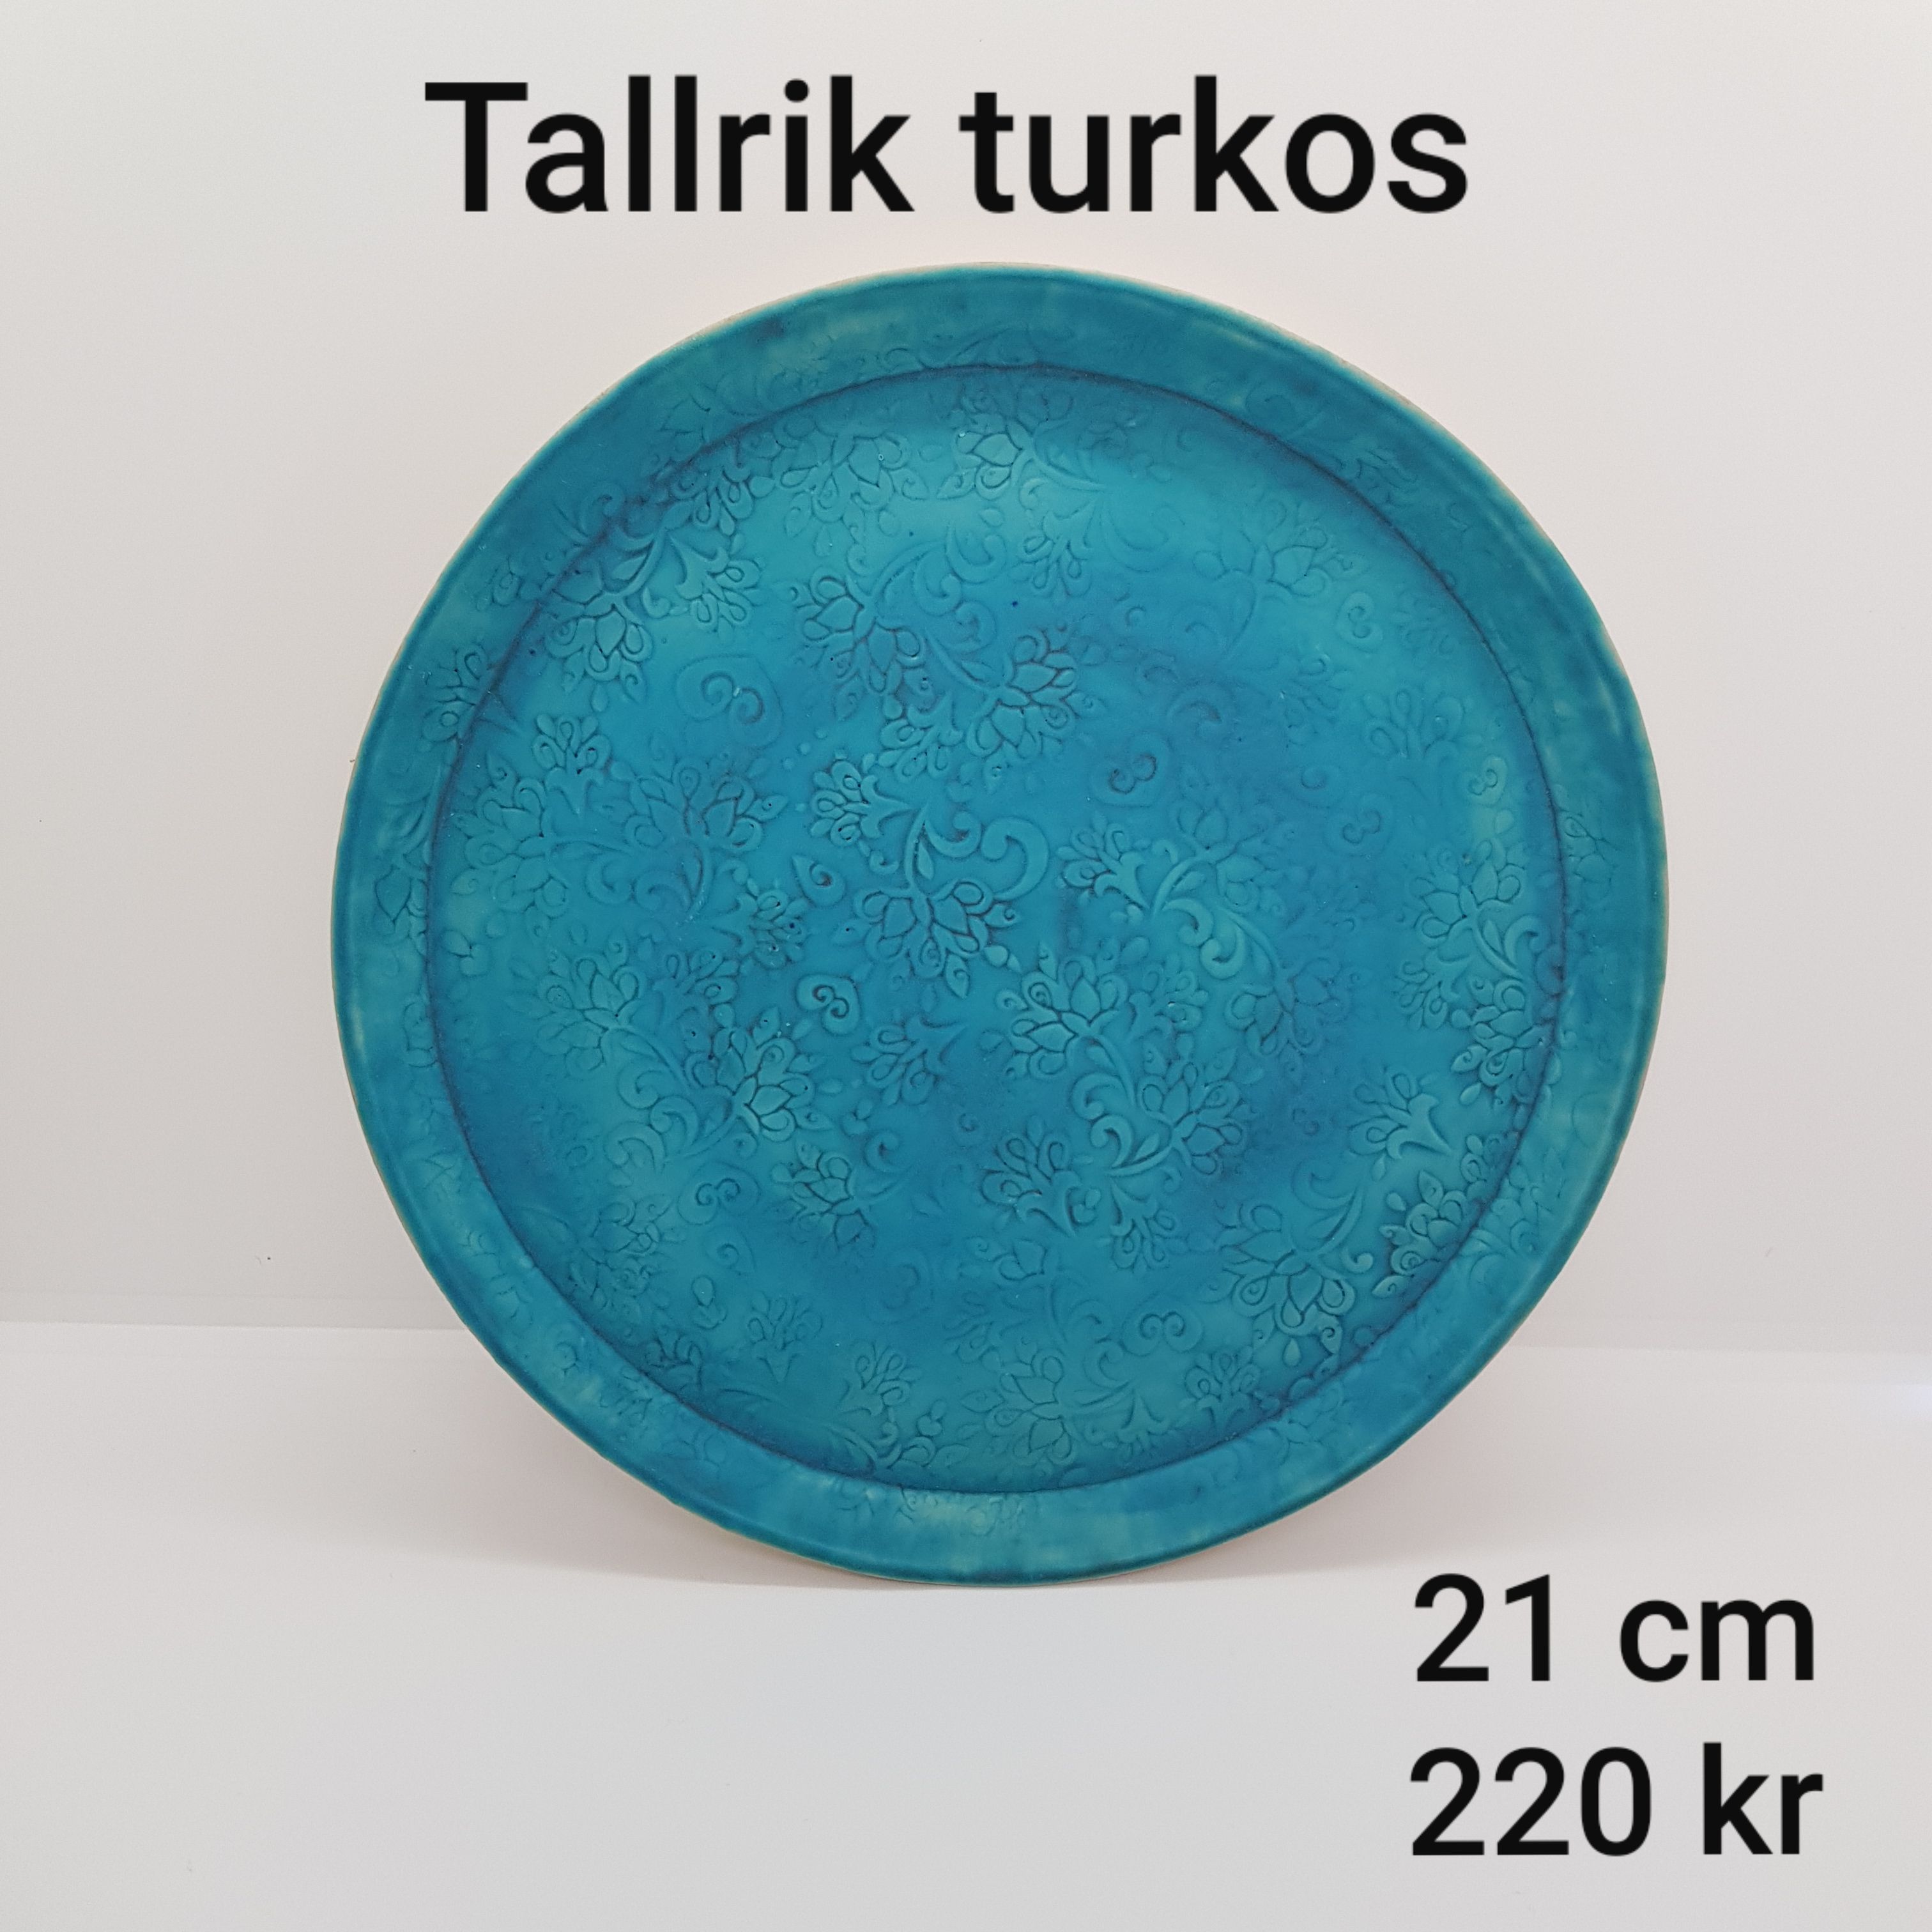 a tallrik turkos